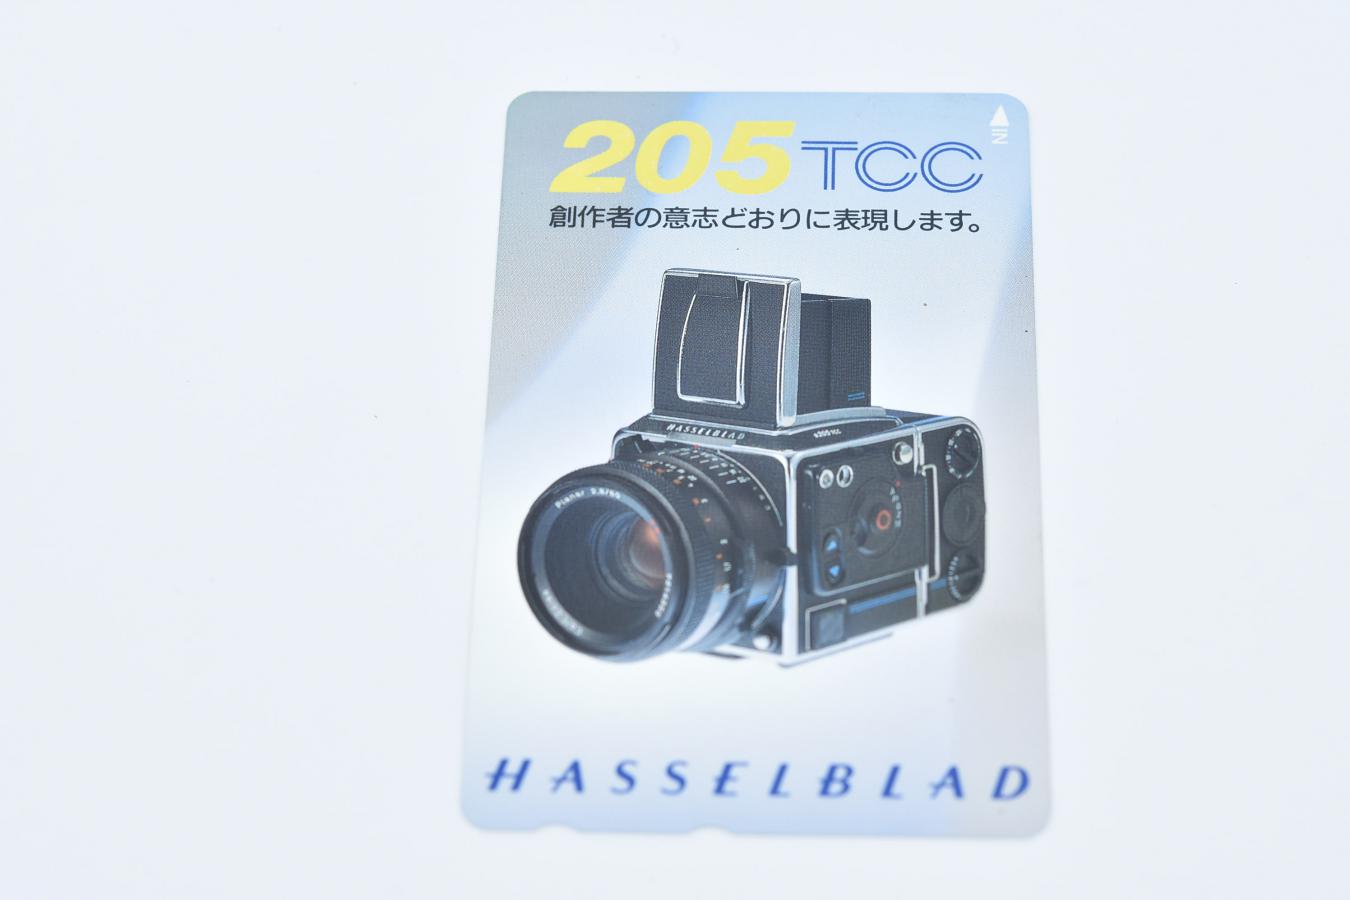 【コレクション向け 未使用】 HASSELBLAD 205TCC テレホンカード